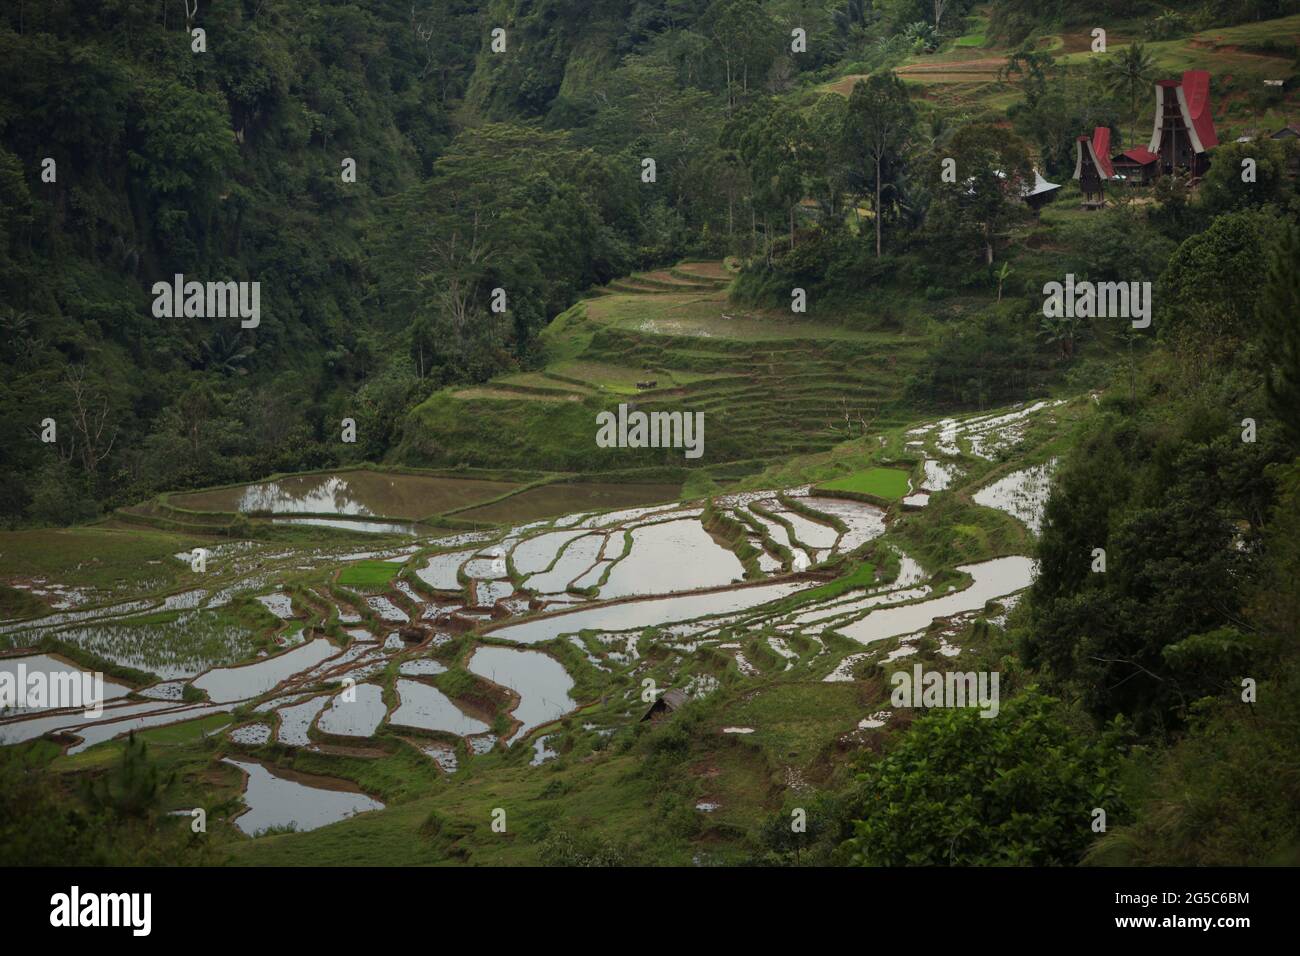 Reisterrassen im Dorf Piongan, Nord-Toraja, Süd-Sulawesi, Indonesien. Höhere Temperaturen, die durch die globale Erwärmung verursacht werden, dürften die Reiserträge in Indonesien verringern. Veränderungen der El-Nino-Muster, die den Beginn und die Dauer der Regenzeit beeinflussen, bringen auch die landwirtschaftliche Produktion in einen anfälligen Status. Die Entwicklung neuer oder verbesserter lokaler Reissorten, die widerstandsfähiger sind - wie jüngste Studien in anderen Ländern - könnte einer der Schlüssel zur Milderung sein. Stockfoto